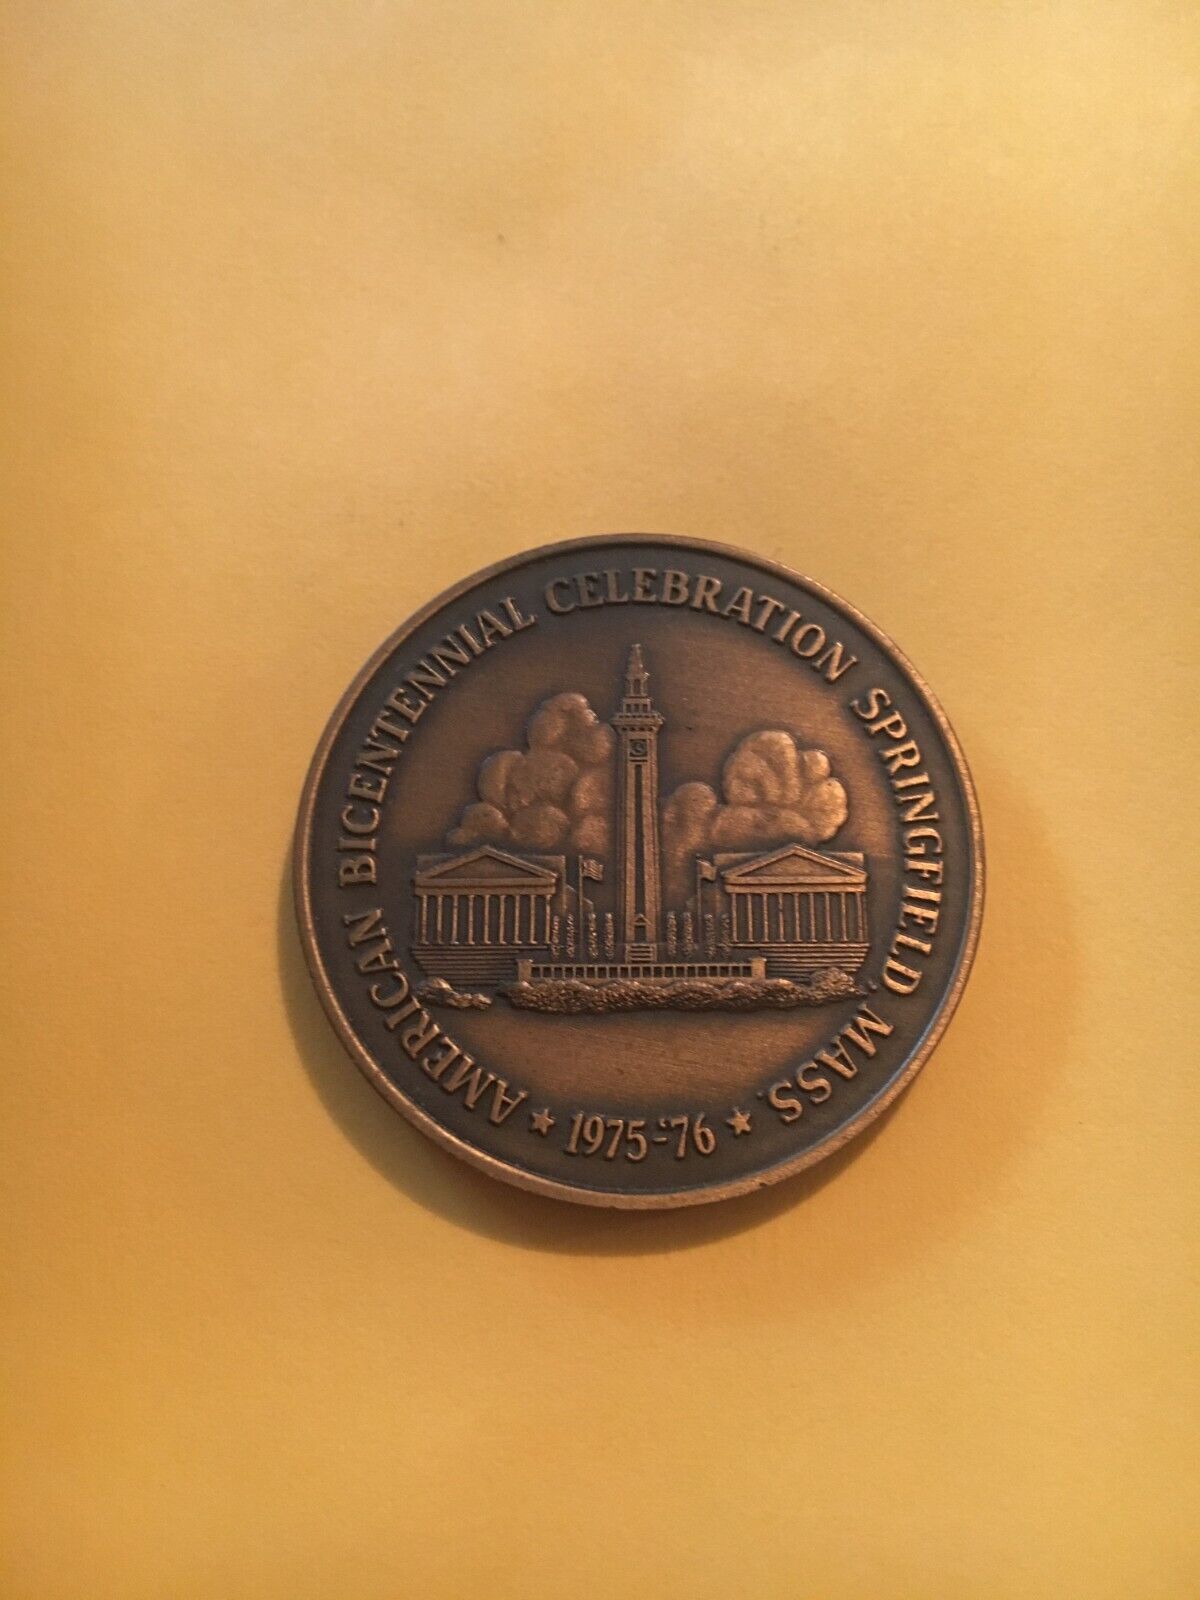 Springfield Mass. Bicentennial Celebration Challenge Coin / Token